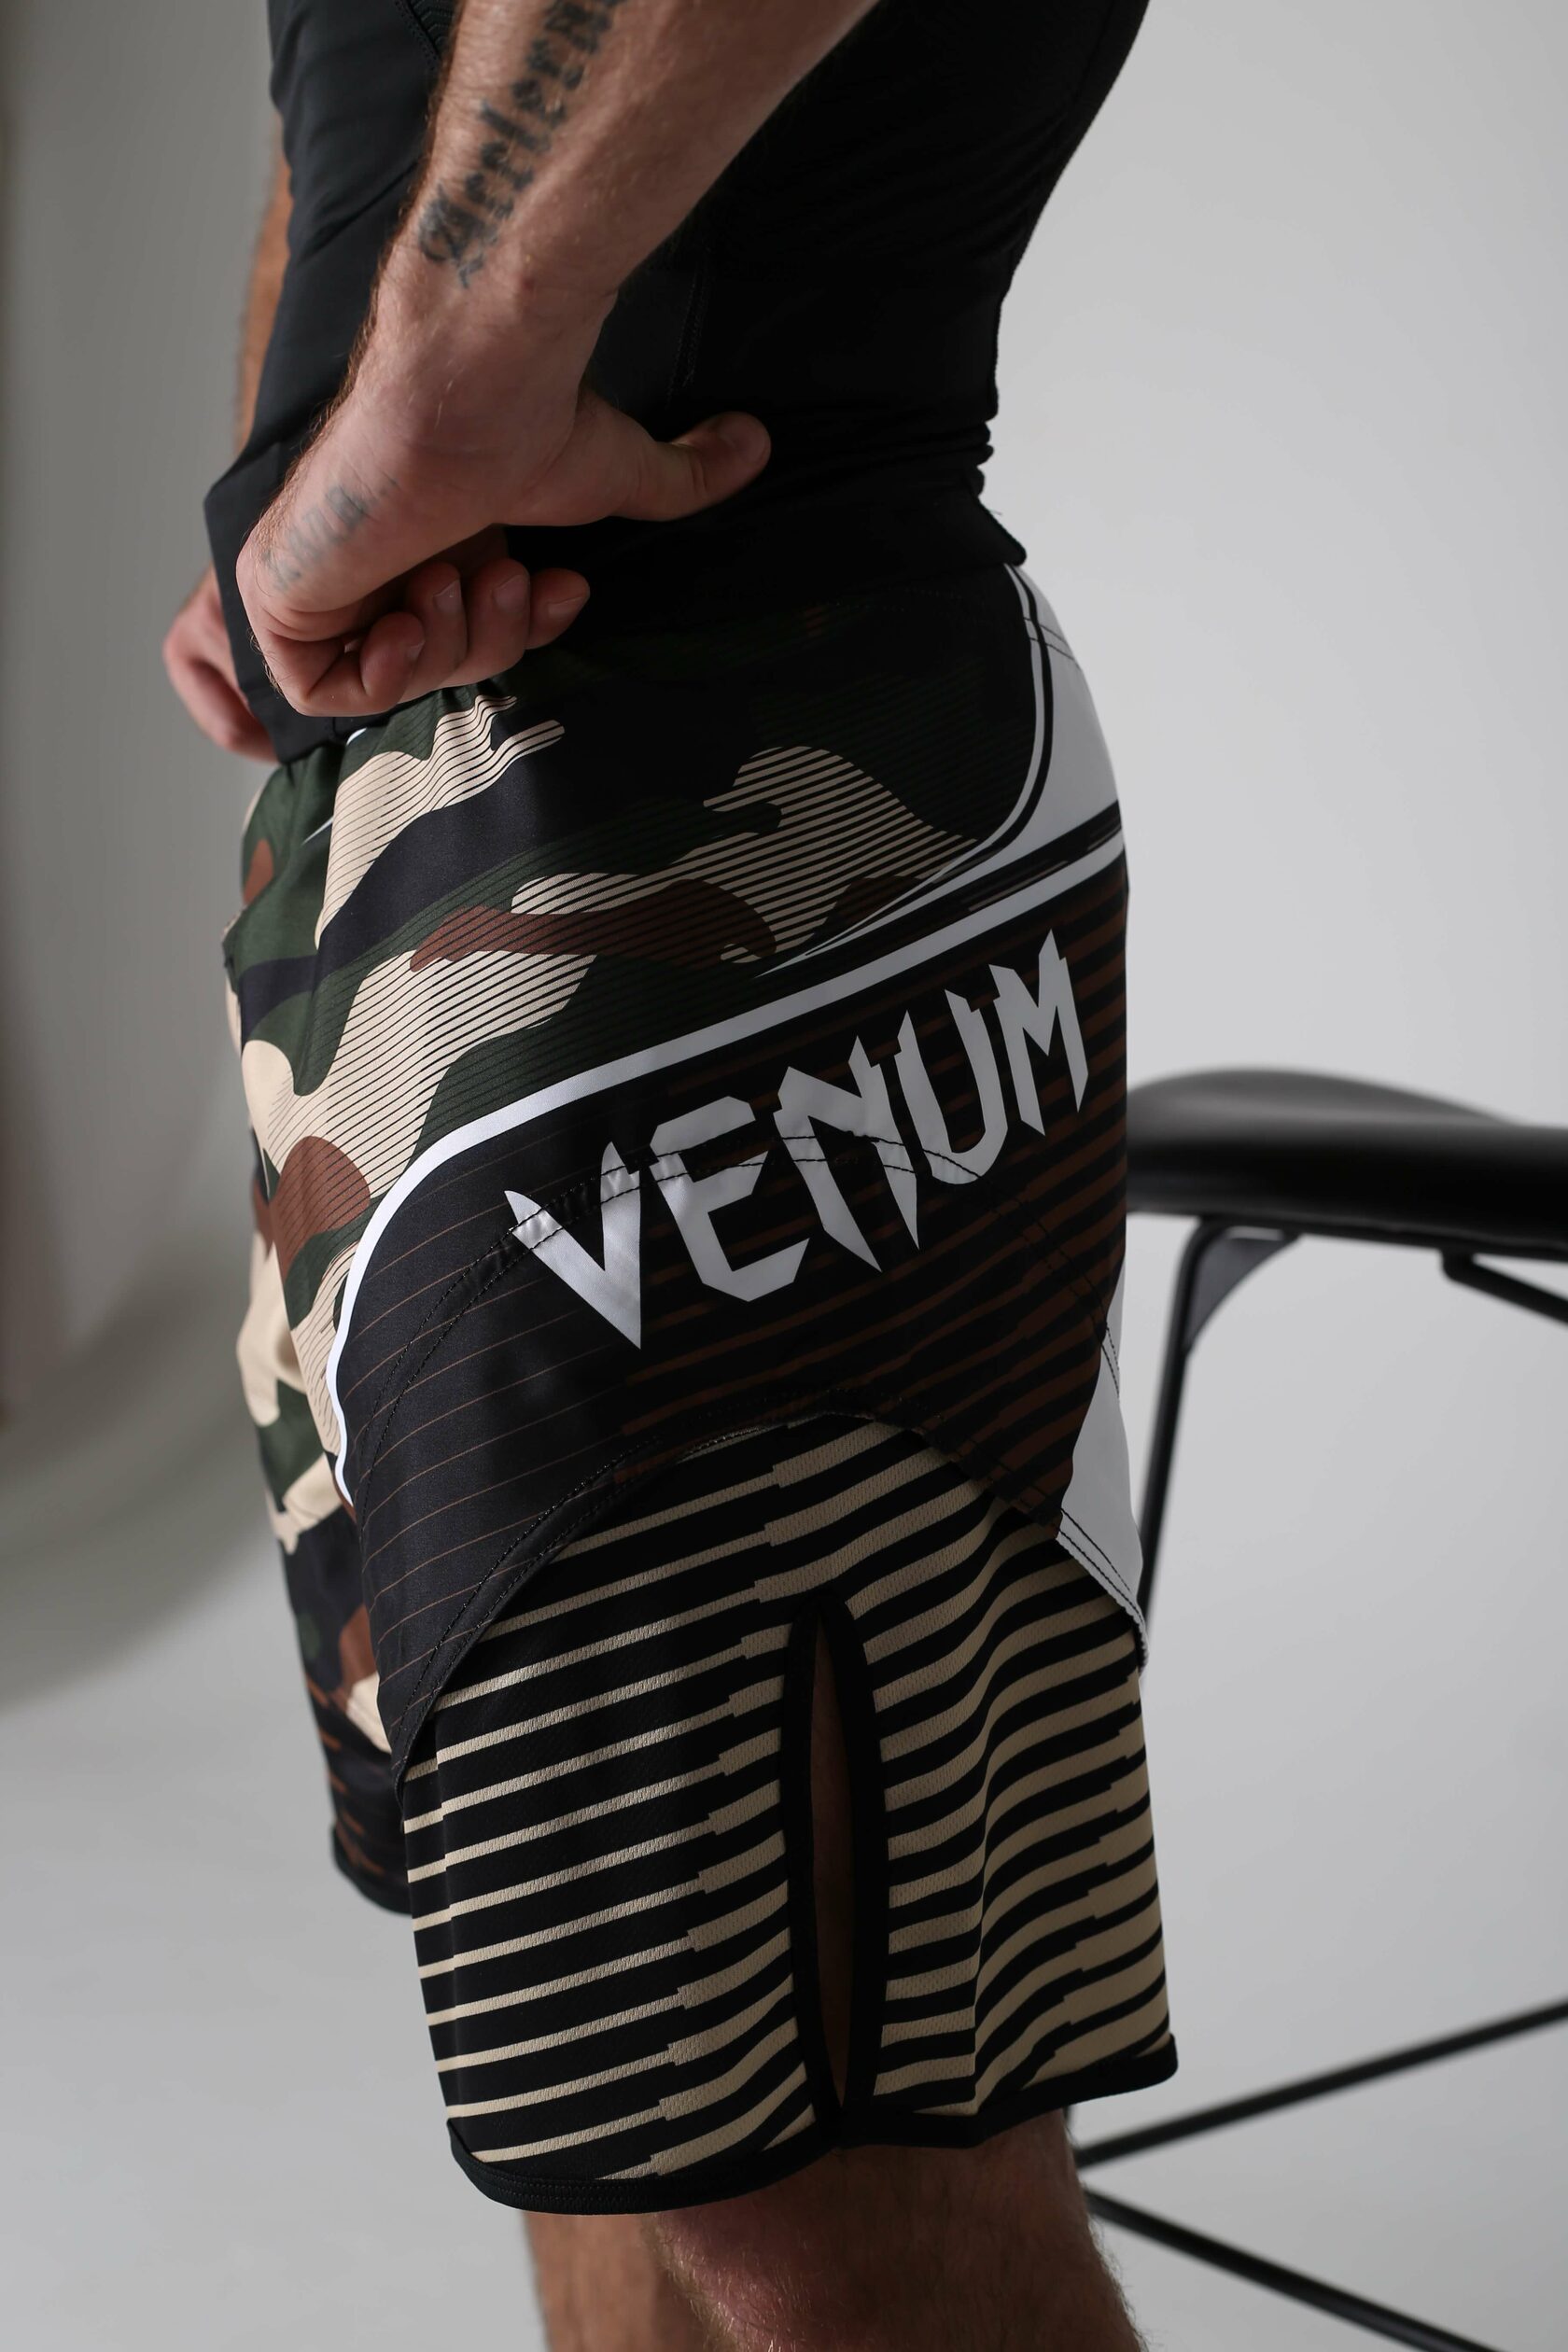  шорты для ММА и единоборств Венум (Venum) для мужчин